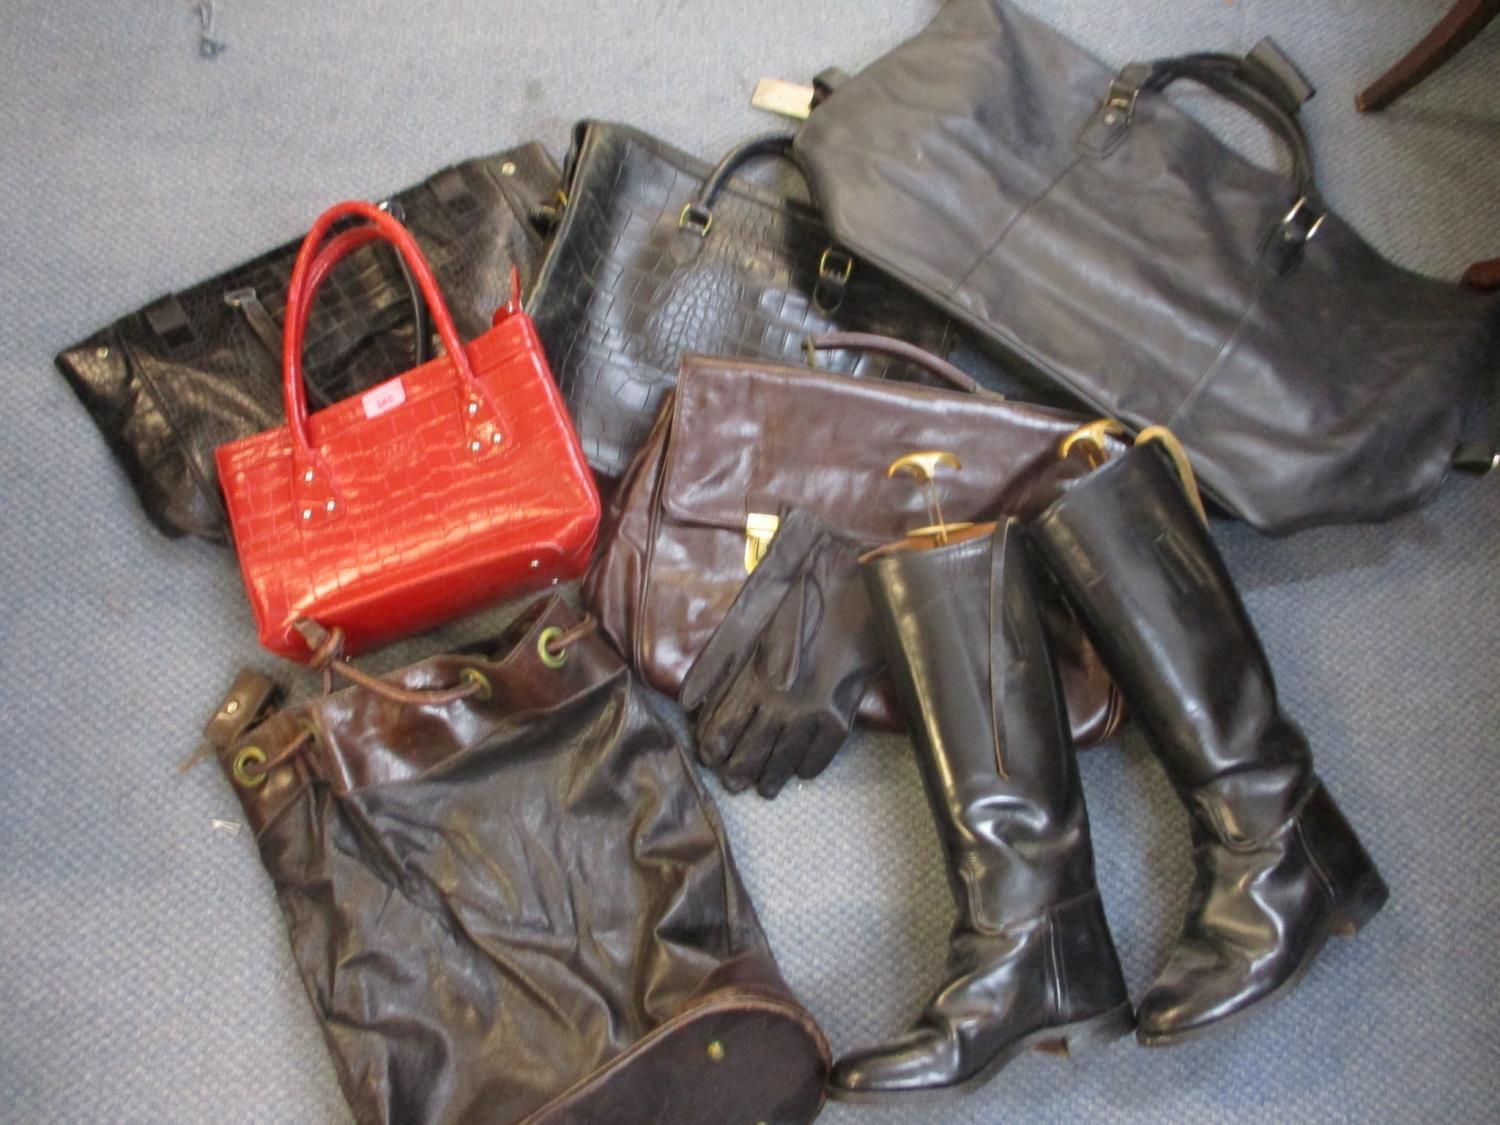 A red Osprey handbag, an Abro black shoulder bag with dustbag, a Levington and Moon black handbag, a